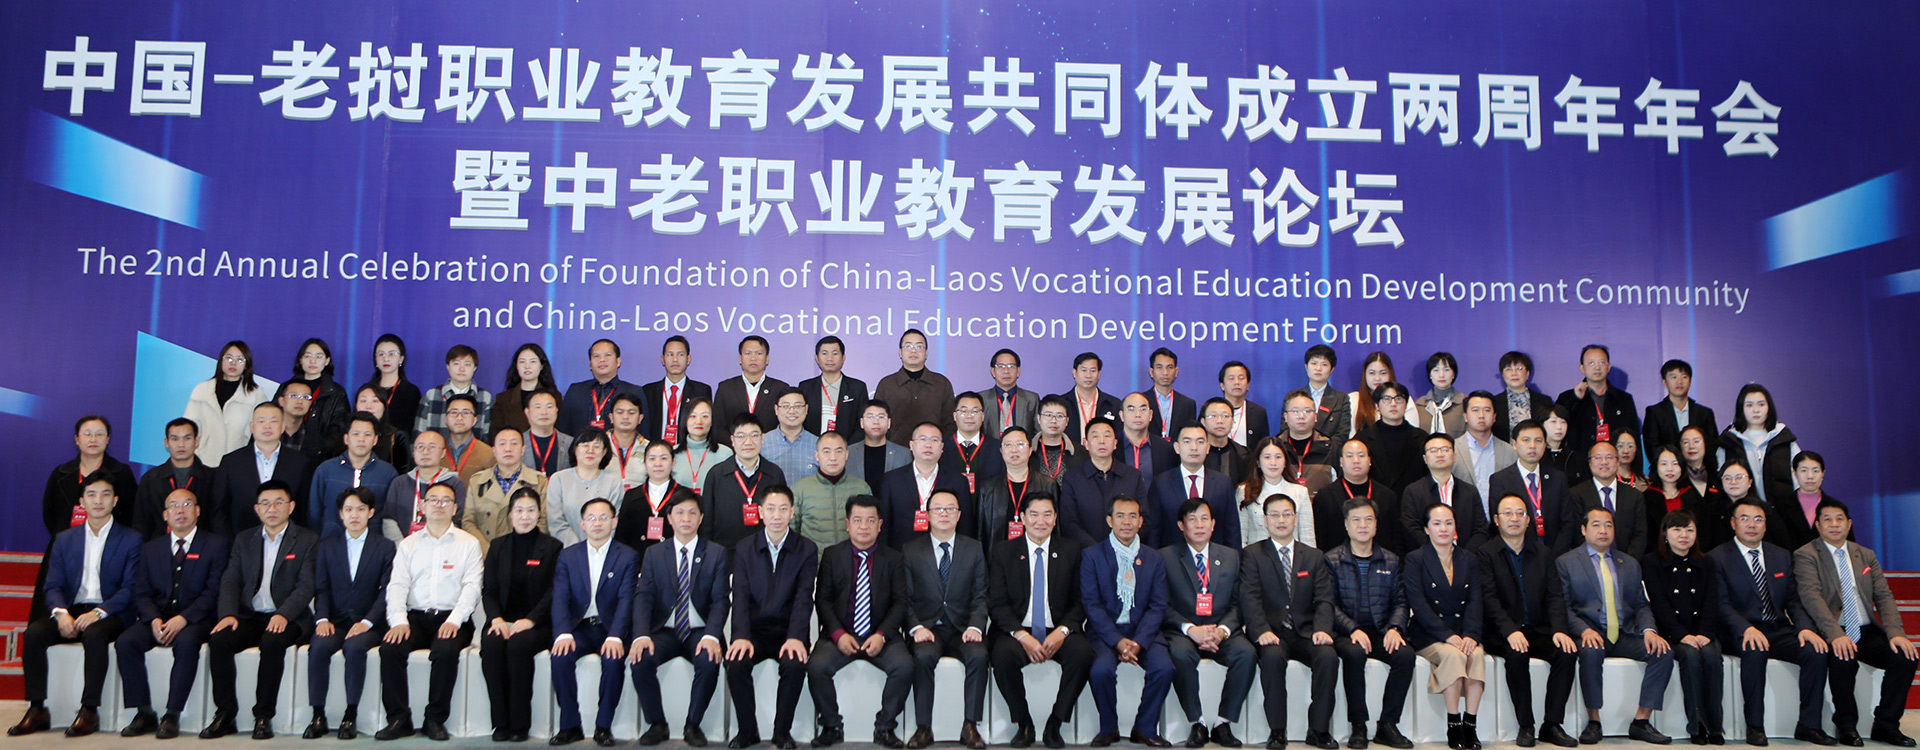 中国-老挝职业教育发展共同体成立两周年年会暨中老职业教育发展论坛